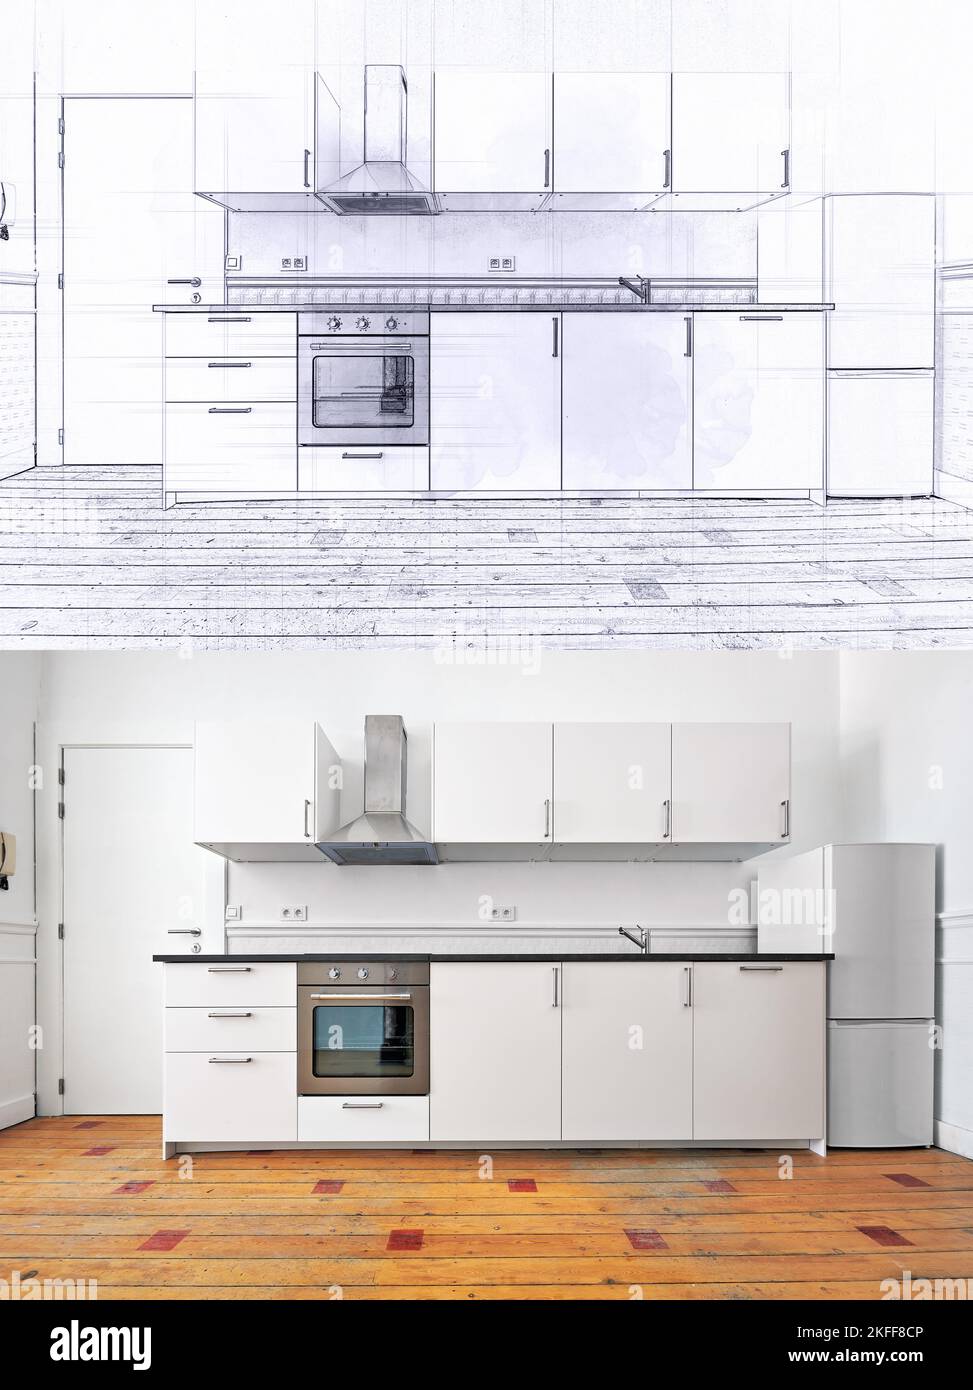 Disegno illustrativo e realizzazione di un appartamento vuoto con cucina moderna e pavimento in legno Foto Stock